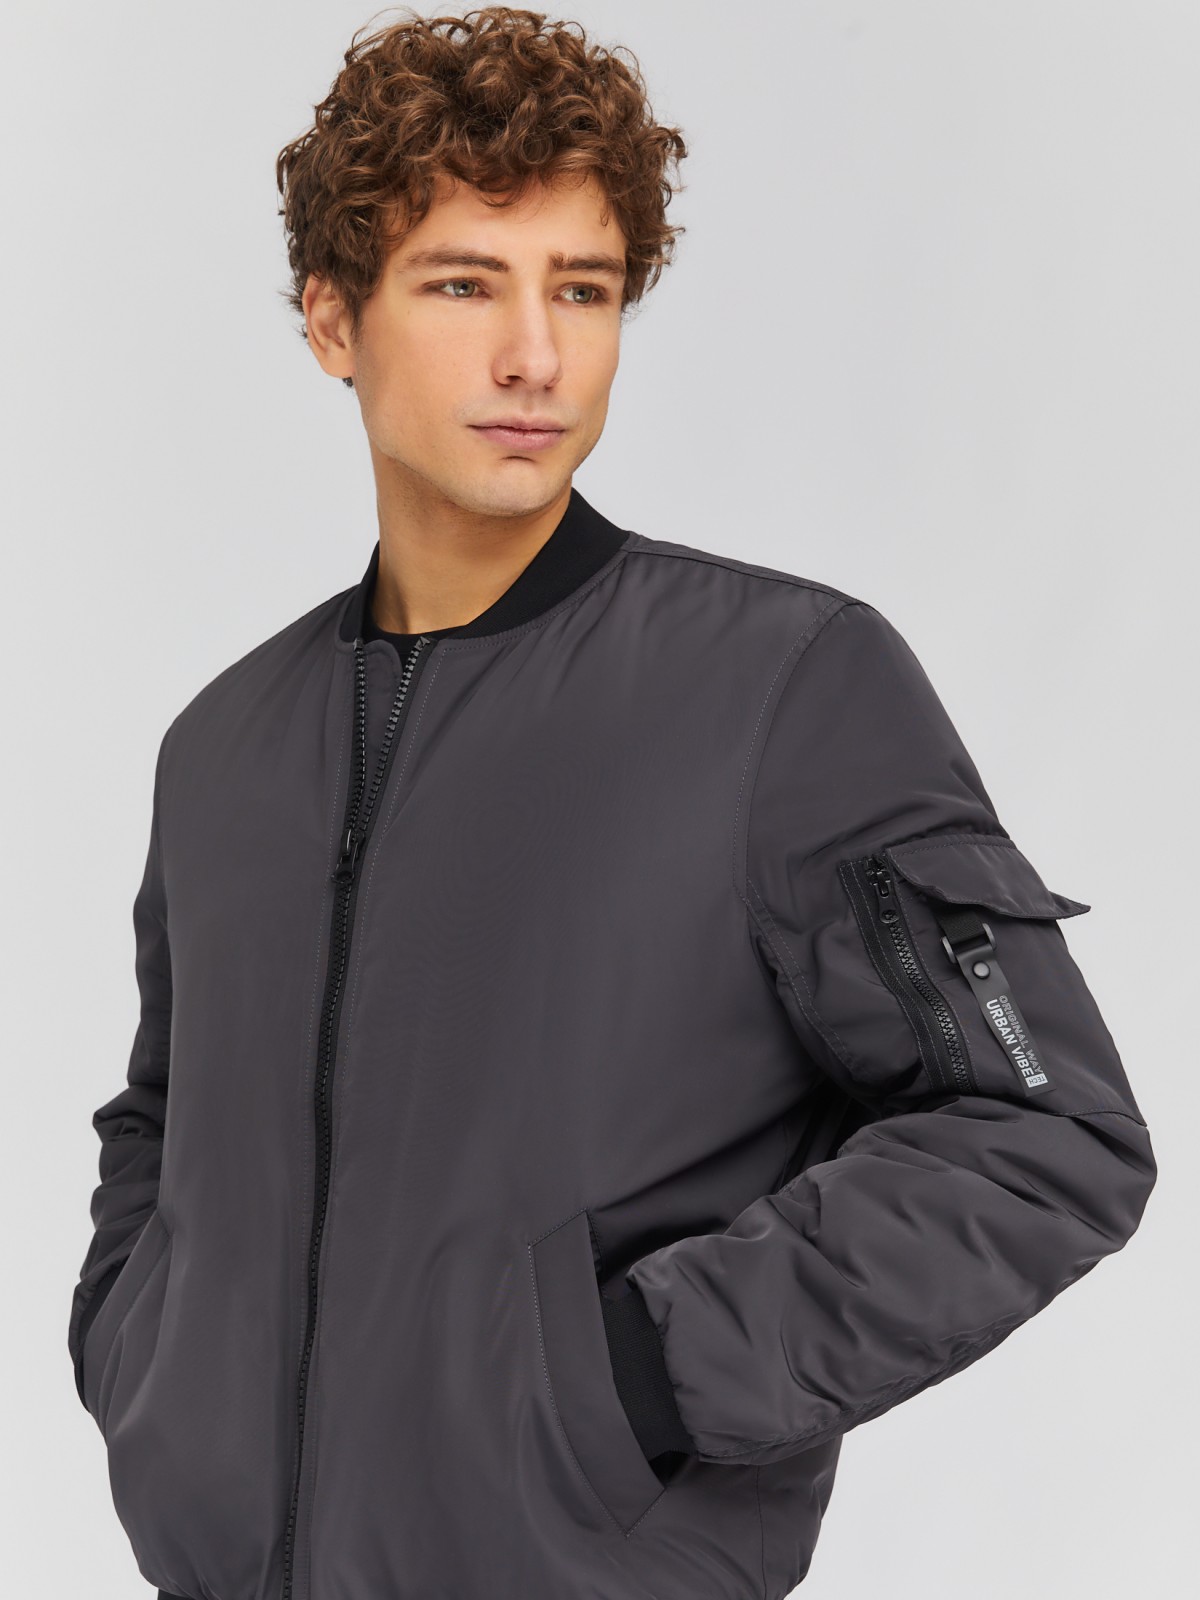 Утеплённая куртка-бомбер с воротником-стойкой zolla 014135102014, цвет серый, размер M - фото 3